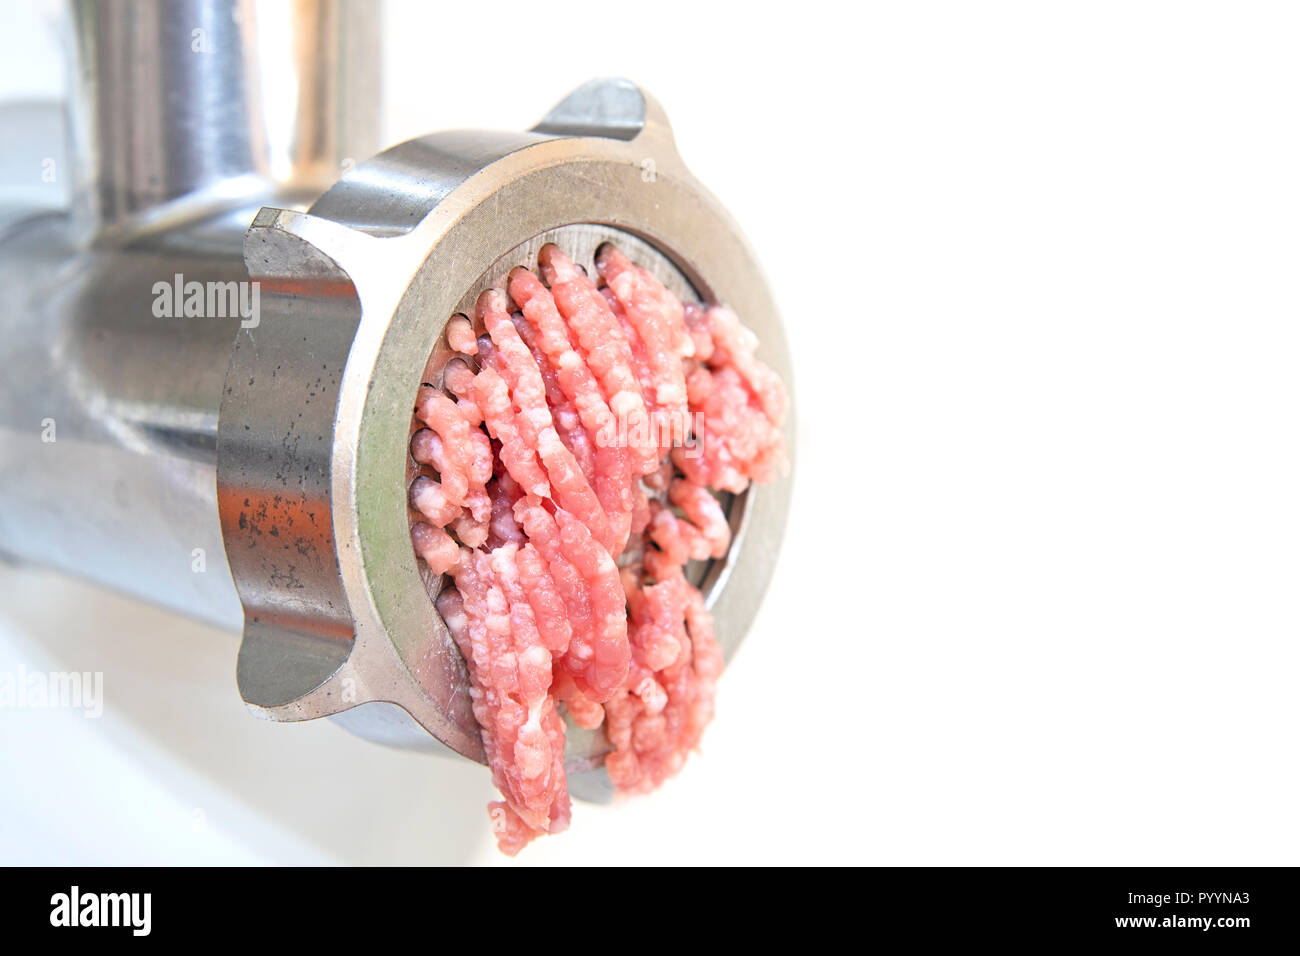 Fleischwolf Maschine und frisch gehacktes Fleisch Stockfotografie - Alamy